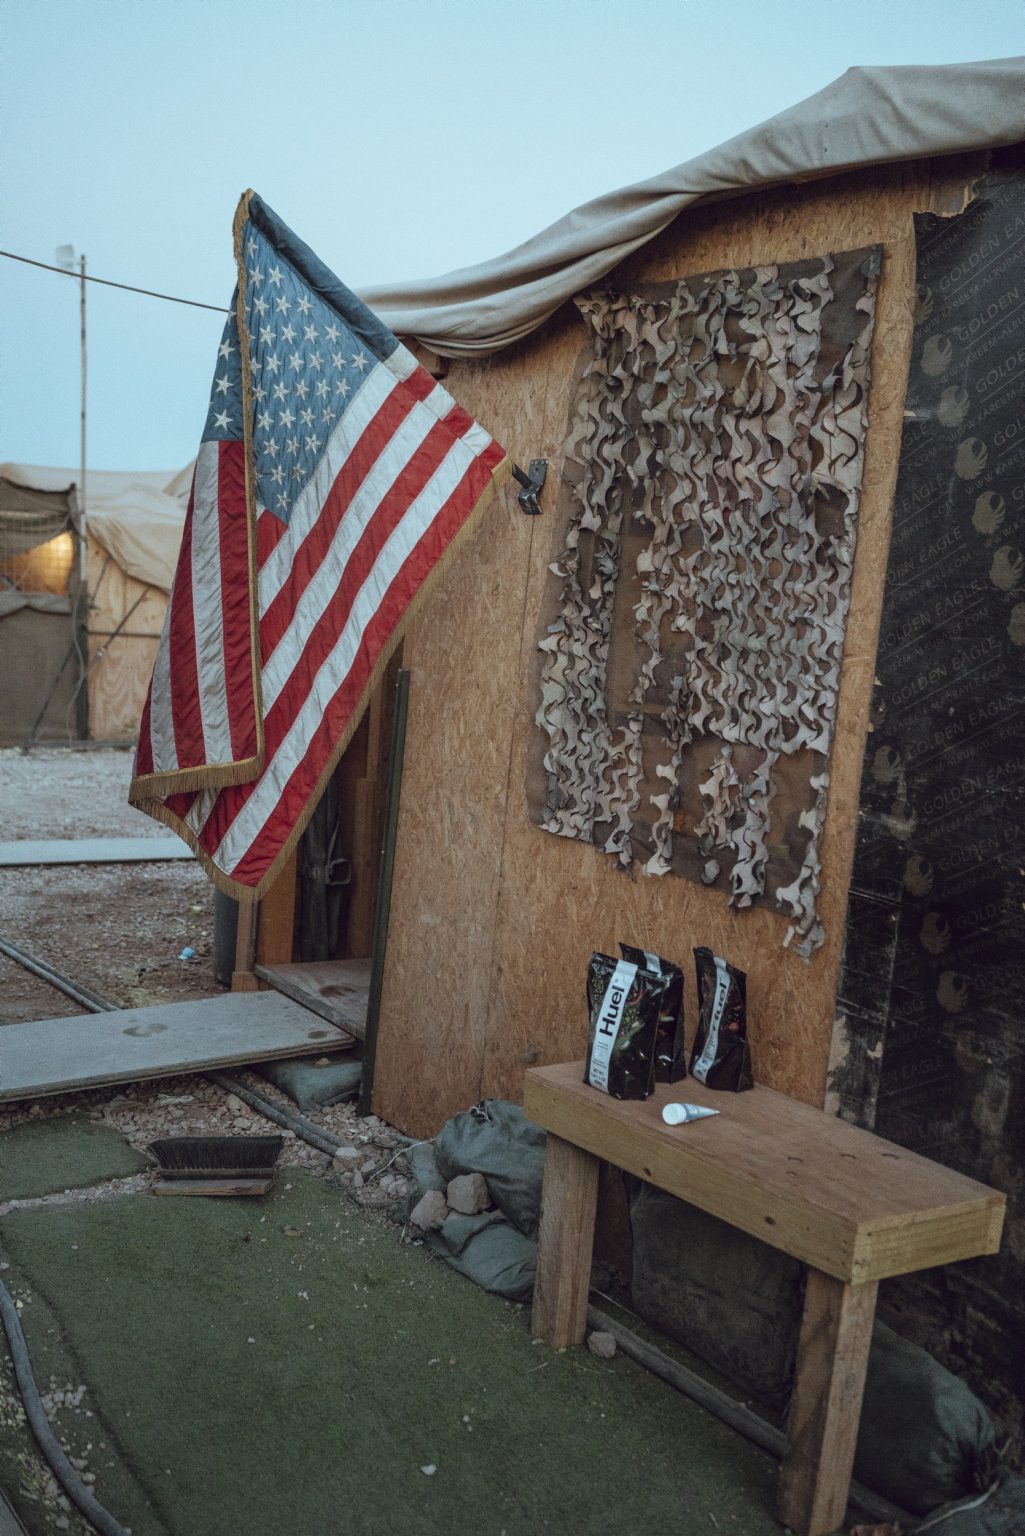 SYRIA. August 26, 2021 - An American flag at the entrance of a military tent inside a remote U.S. Army combat outpost in northeastern Syria, known as RLZ.

SIRIA. 26 agosto 2021 - Una bandiera americana all'ingresso di una tenda militare in un avamposto dell'esercito americano nel nord-est della Siria, noto come RLZ.